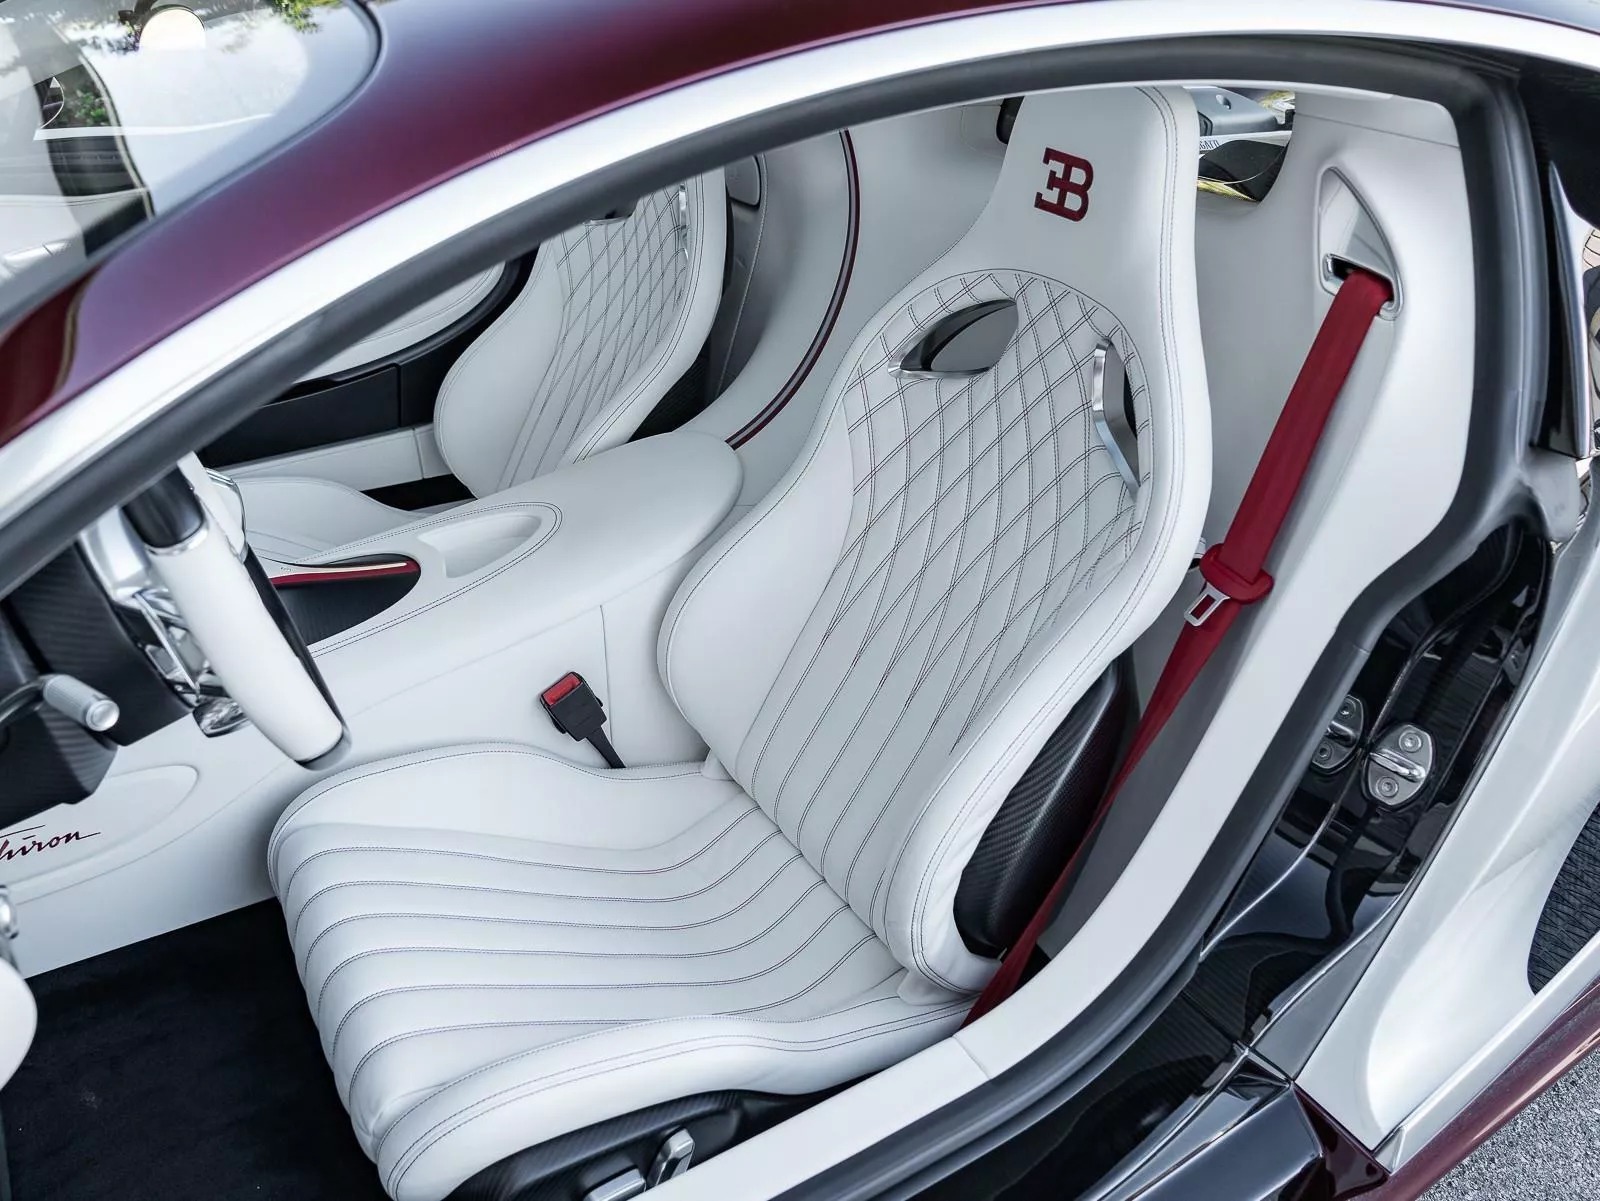 Rao bán Bugatti Chiron giá quy đổi hơn 95 tỷ đồng, chủ xe hứa tặng kèm Rolls-Royce Wraith hợp tông màu- Ảnh 6.